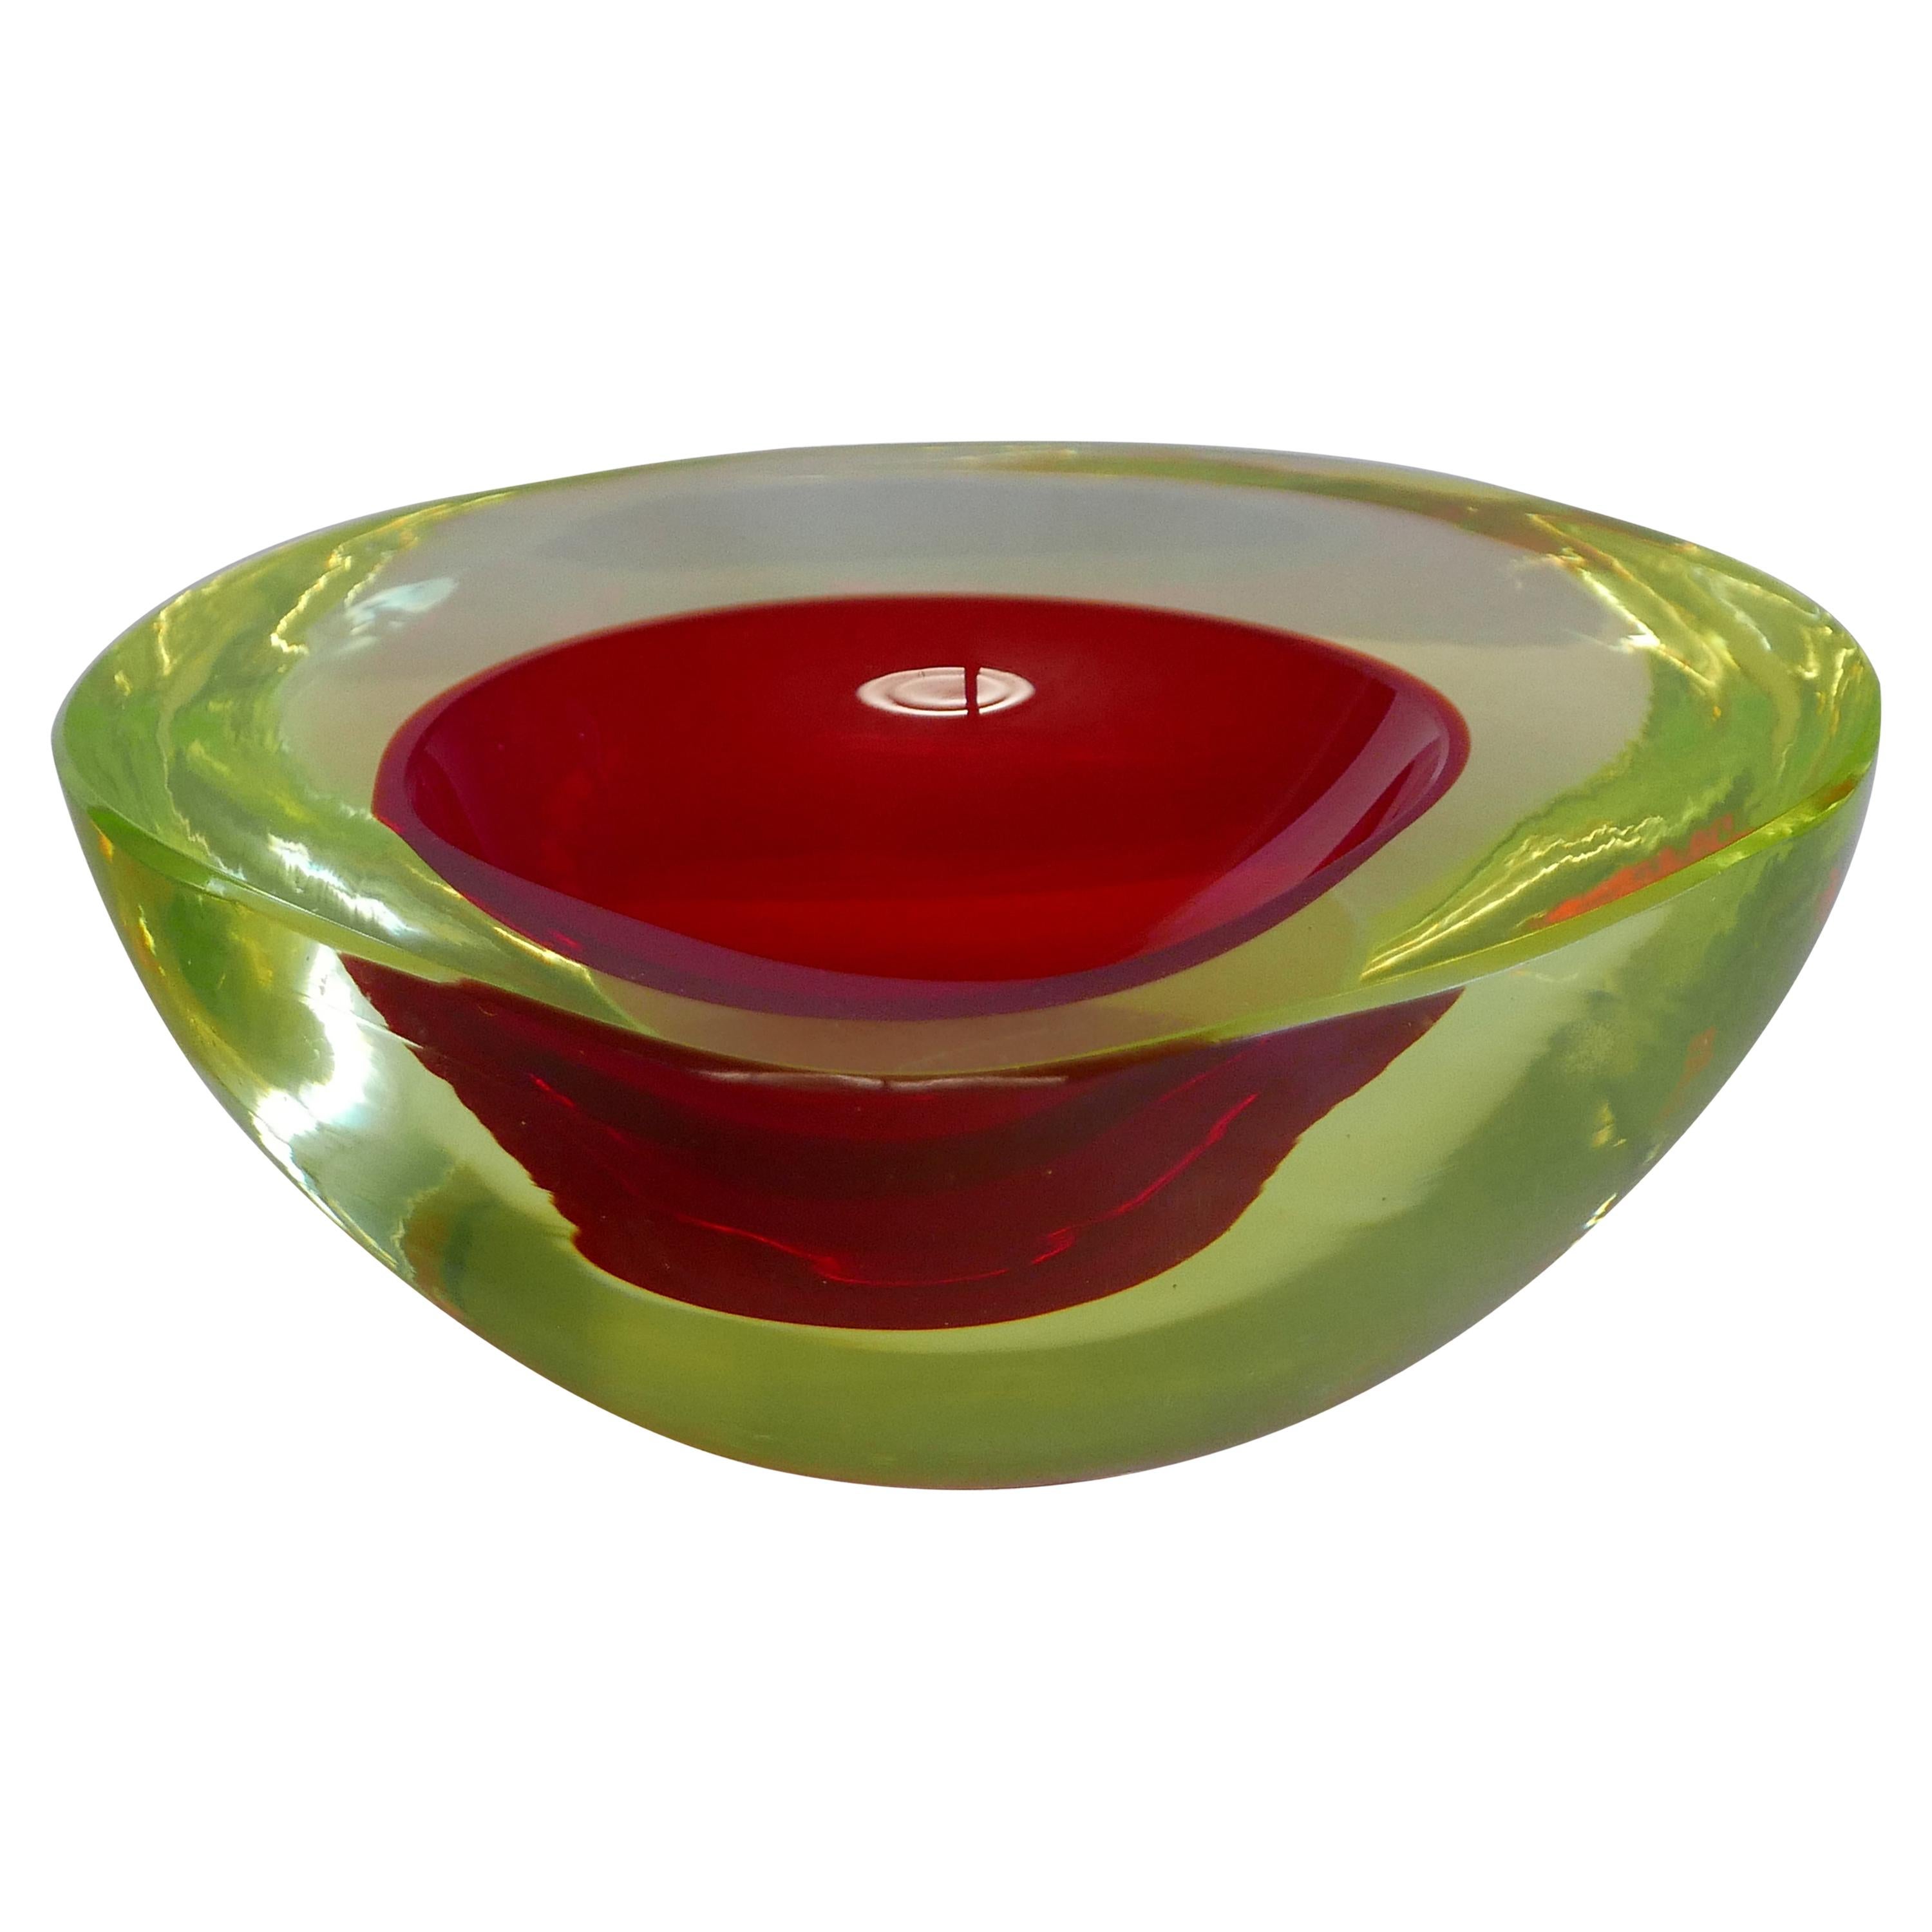 Murano Glass Bowl by Antonio da Ros for Gino Cenedese circa 1960